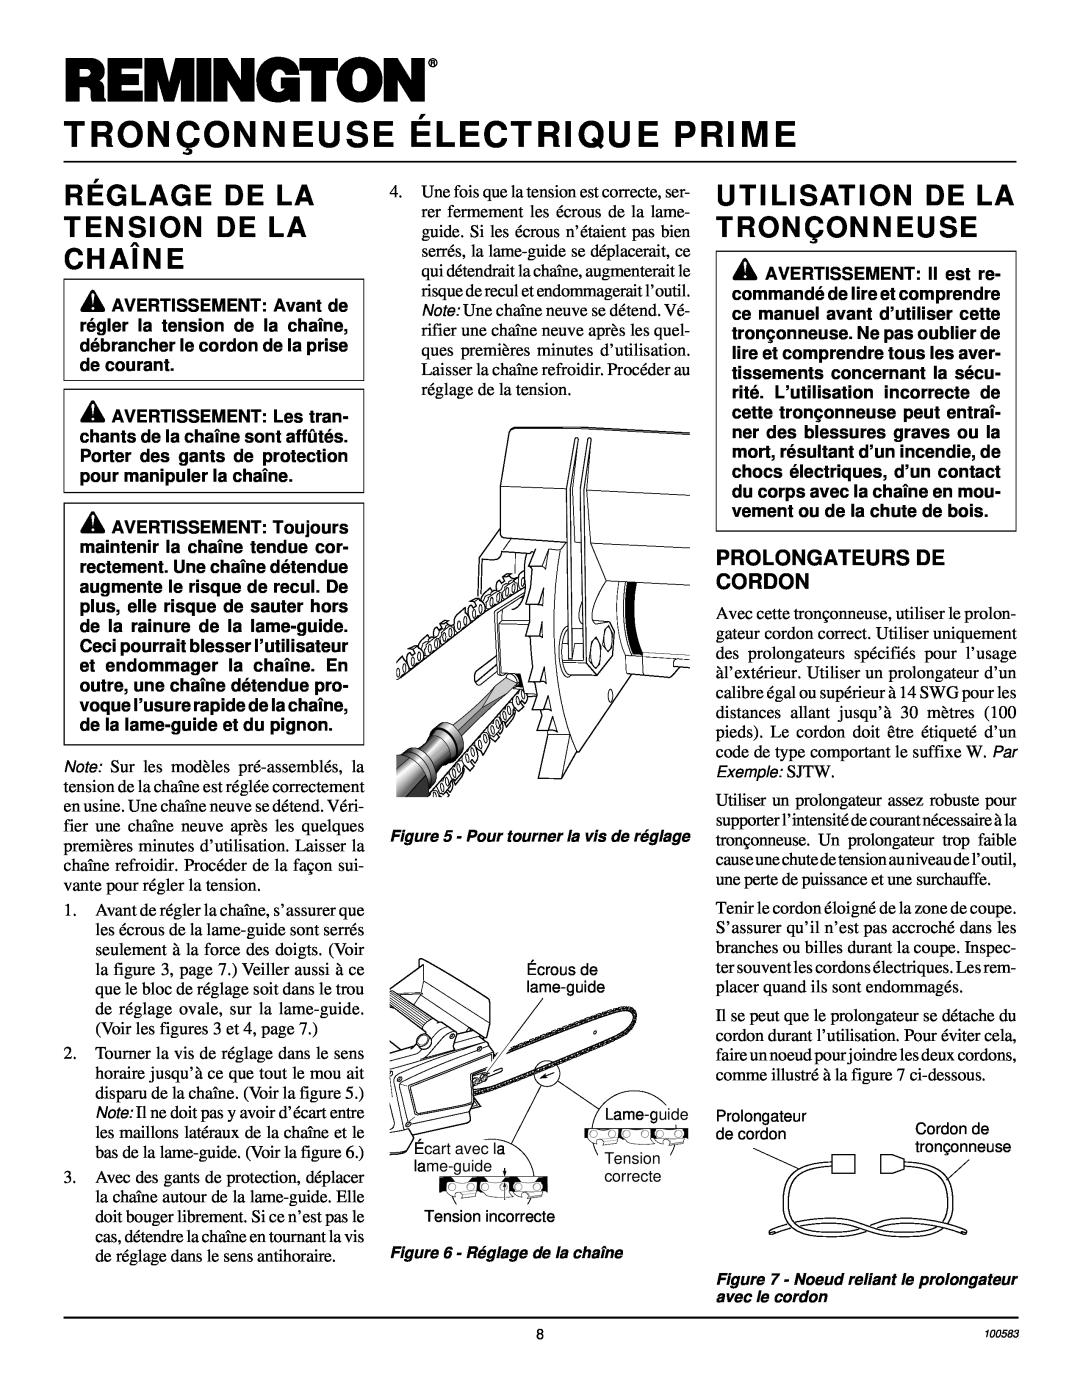 Remington EL-7 16-inch Réglage De La Tension De La Chaîne, Utilisation De La Tronçonneuse, Prolongateurs De Cordon 